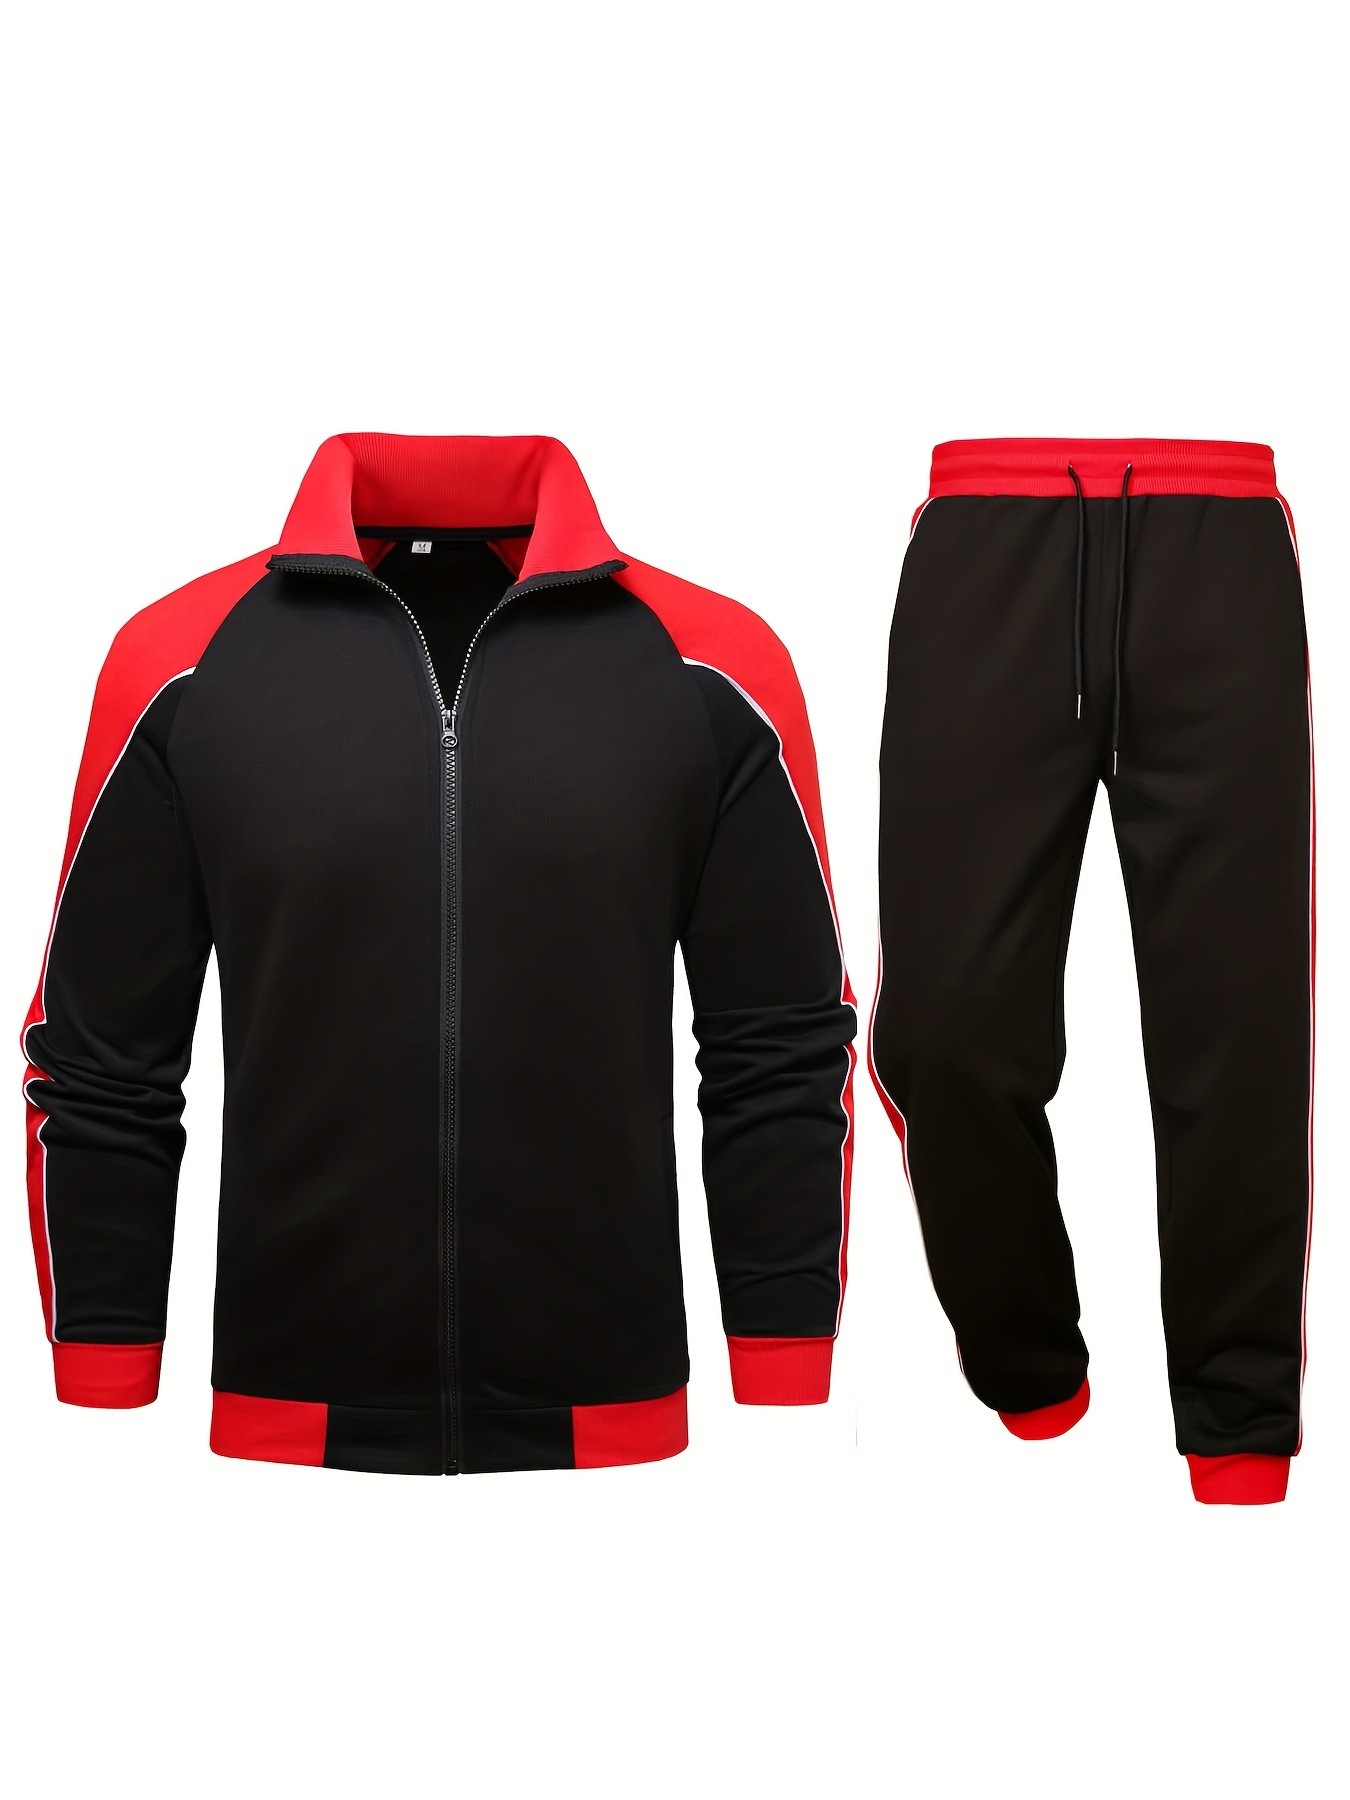 New Men Joggers Suit Sets, New Casual Sports Suit, Track Suit Jacket Men